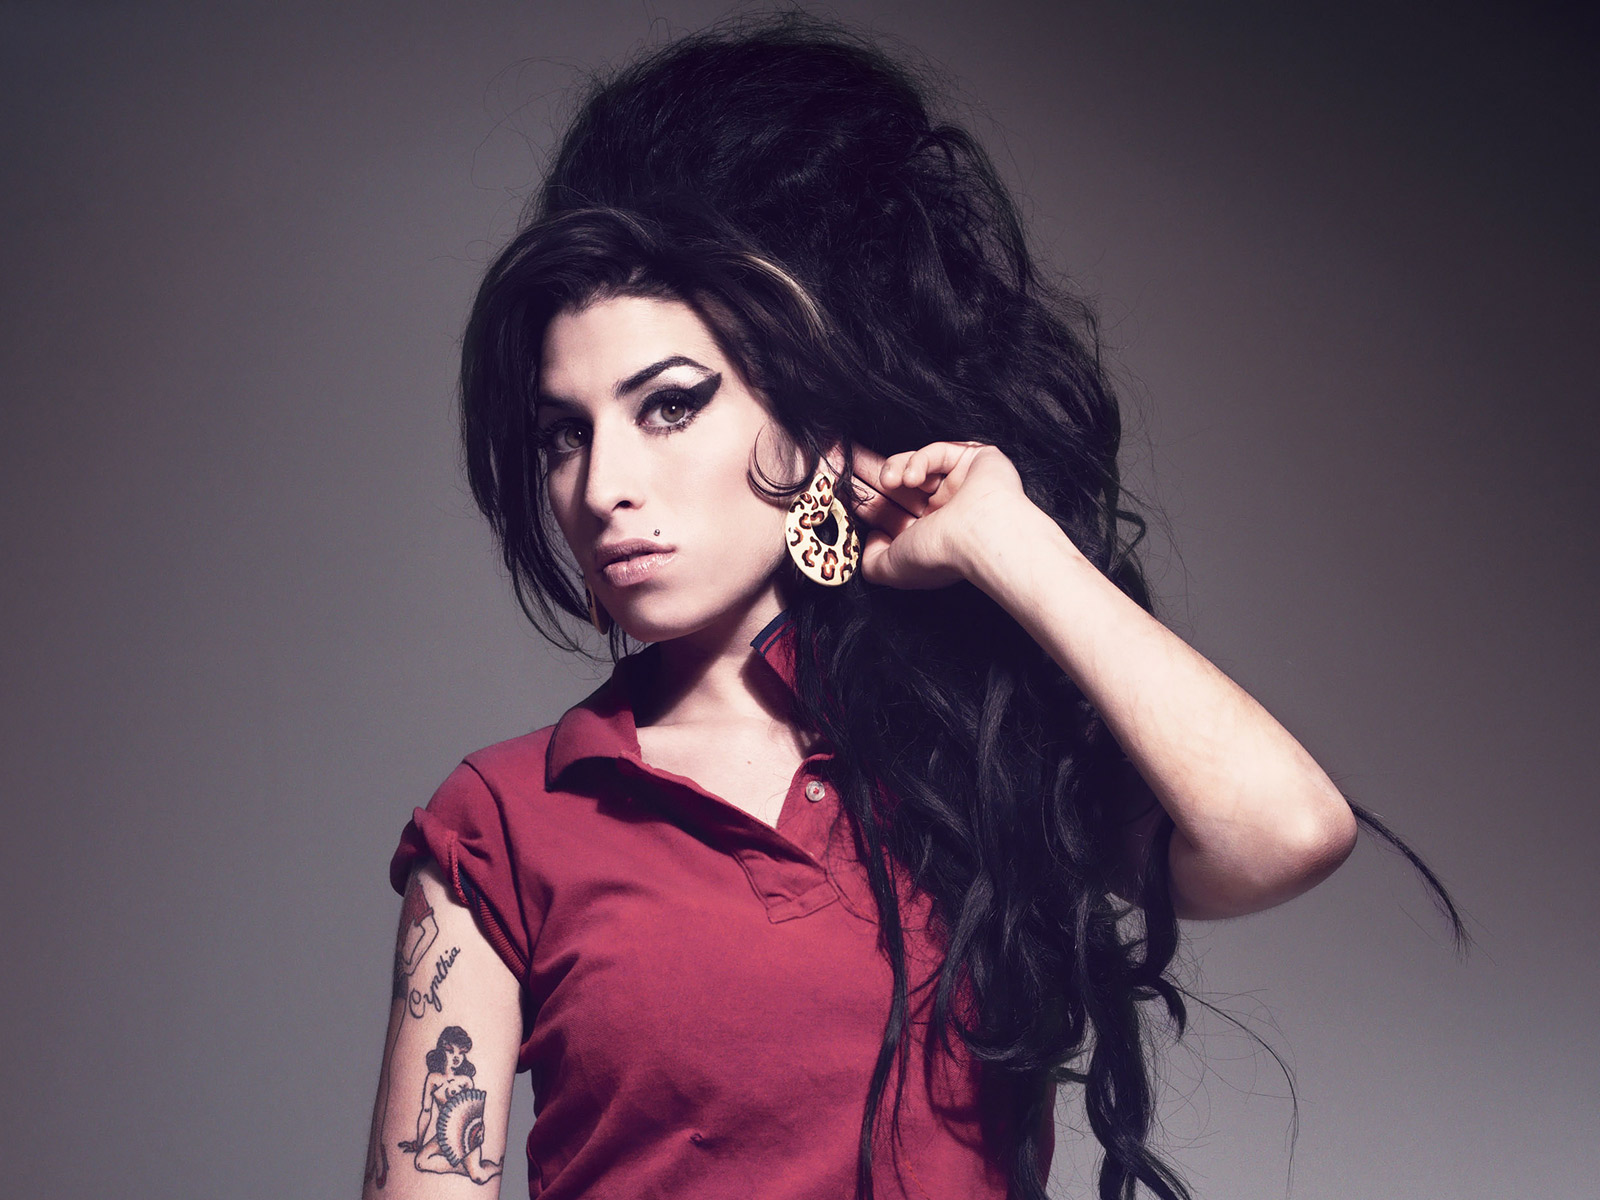 Amy Winehouse; gauza guztien gainetik soul ahots handienetako bat